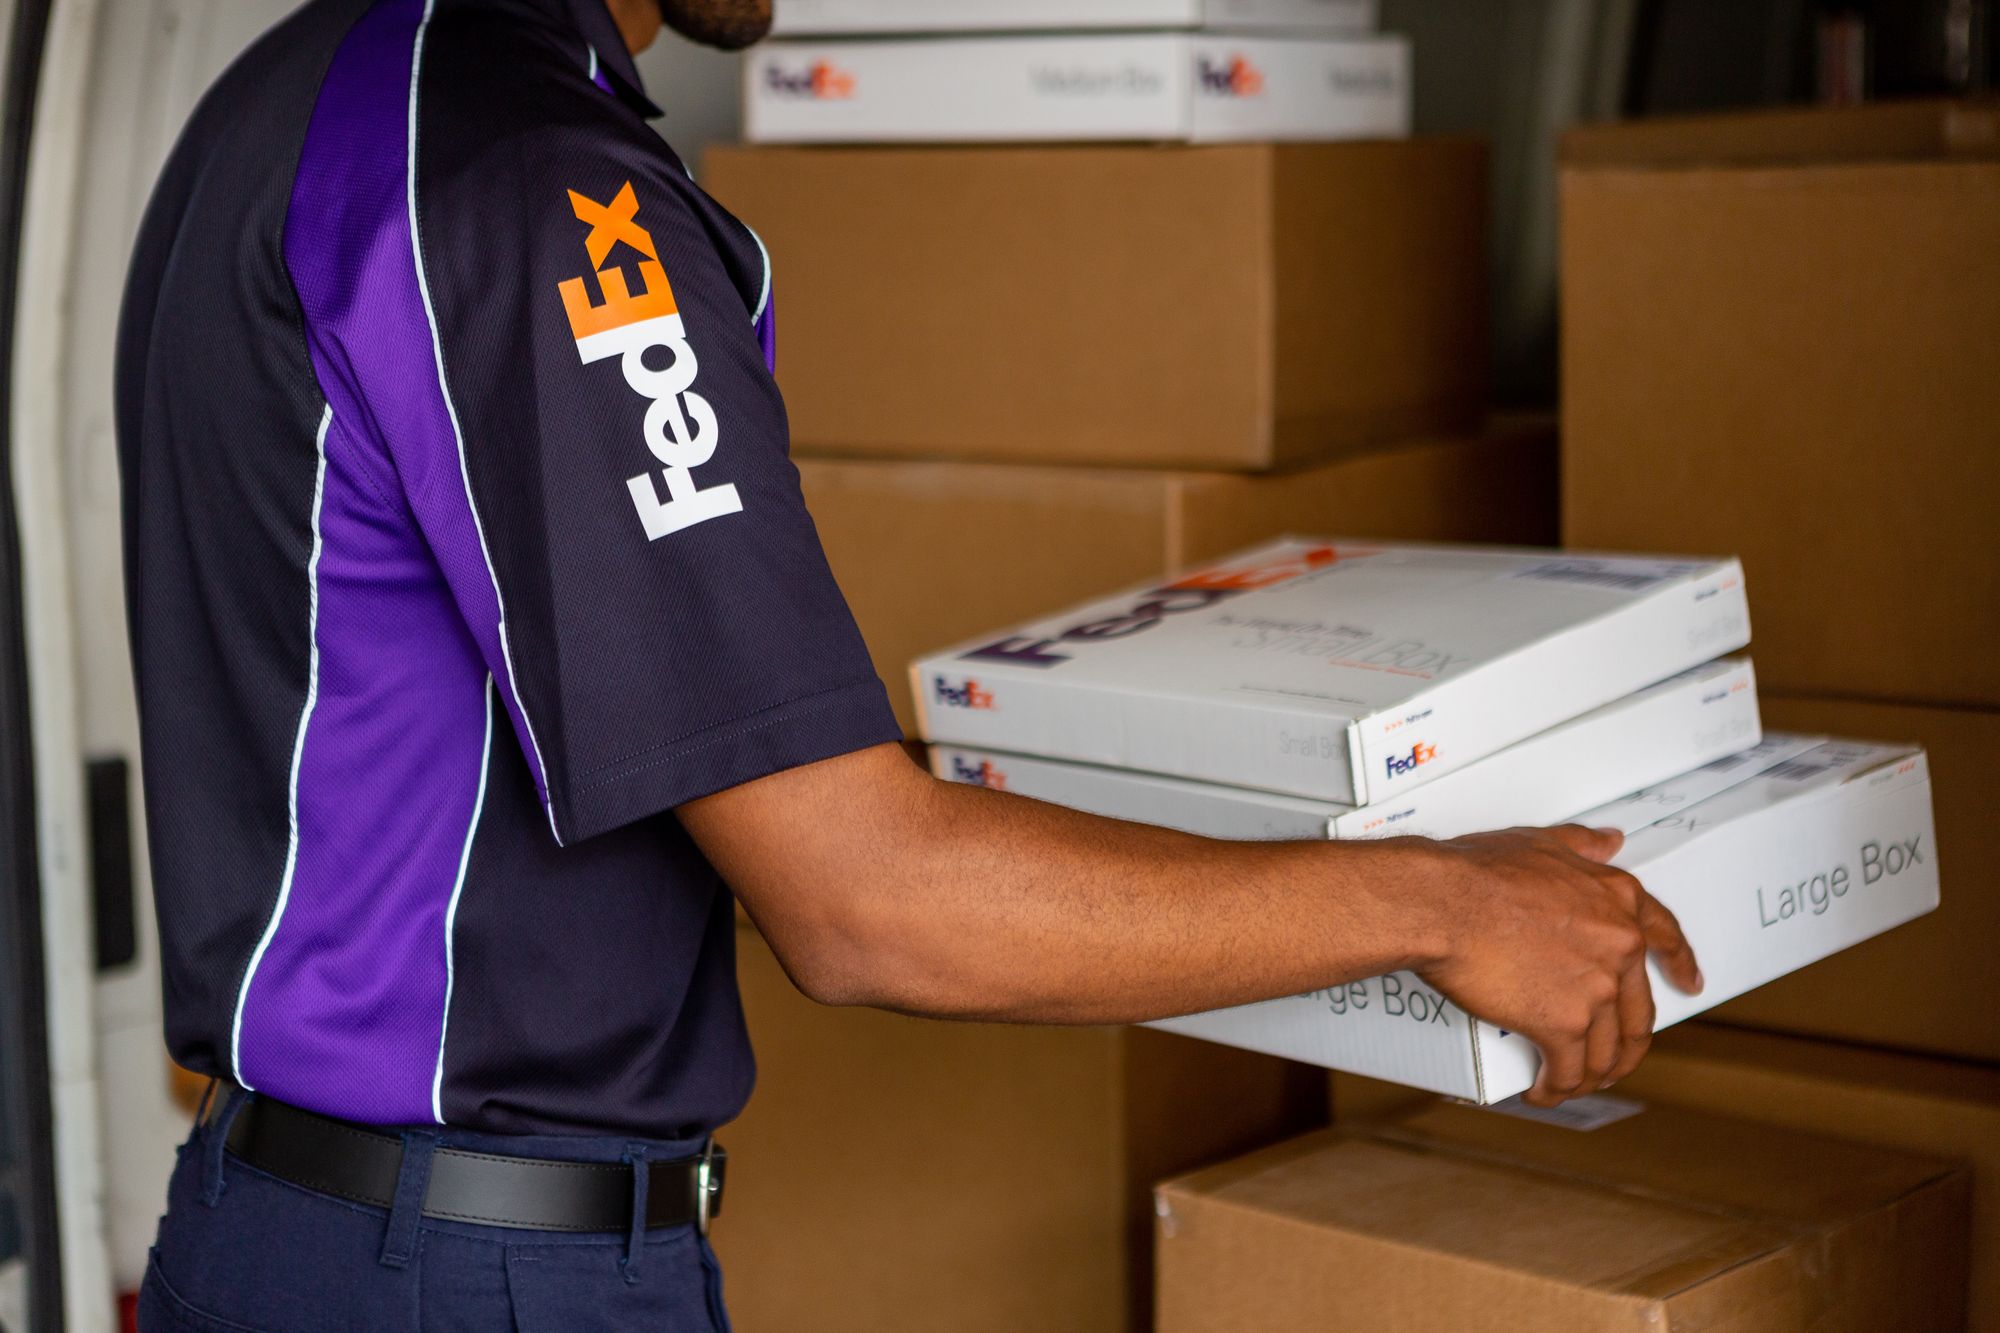 FedExの輸出サービスにおける地域外集荷料金の廃止のお知らせ